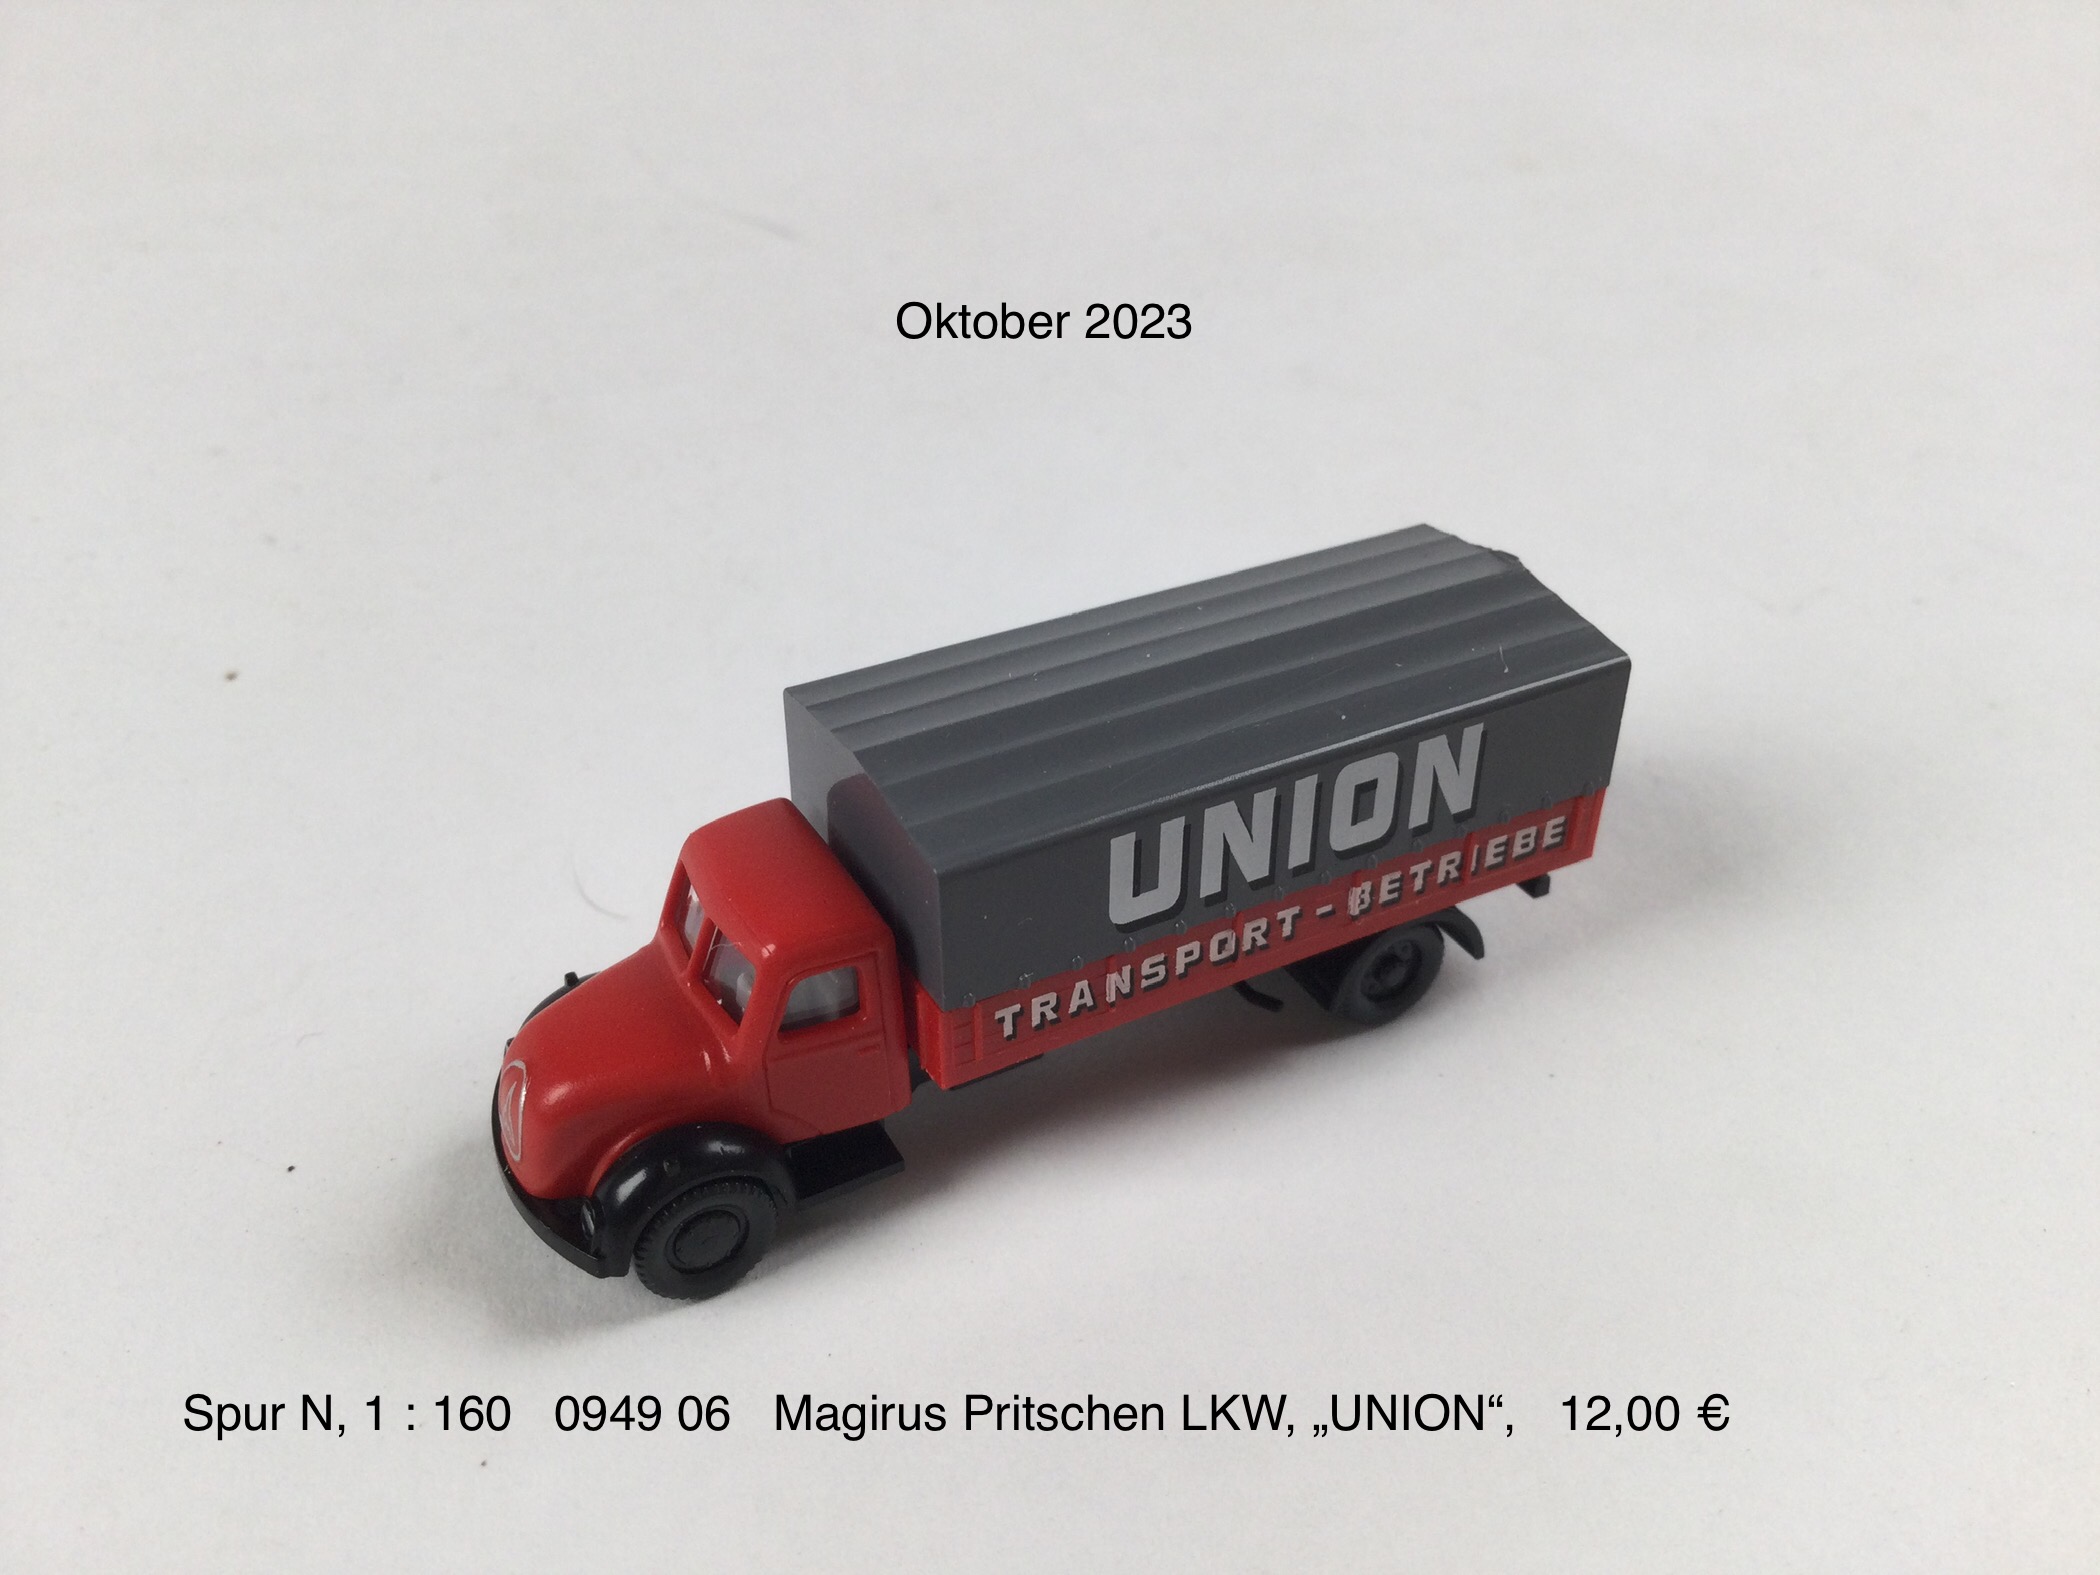 Magirus Pritschen Lkw "Union Transport"